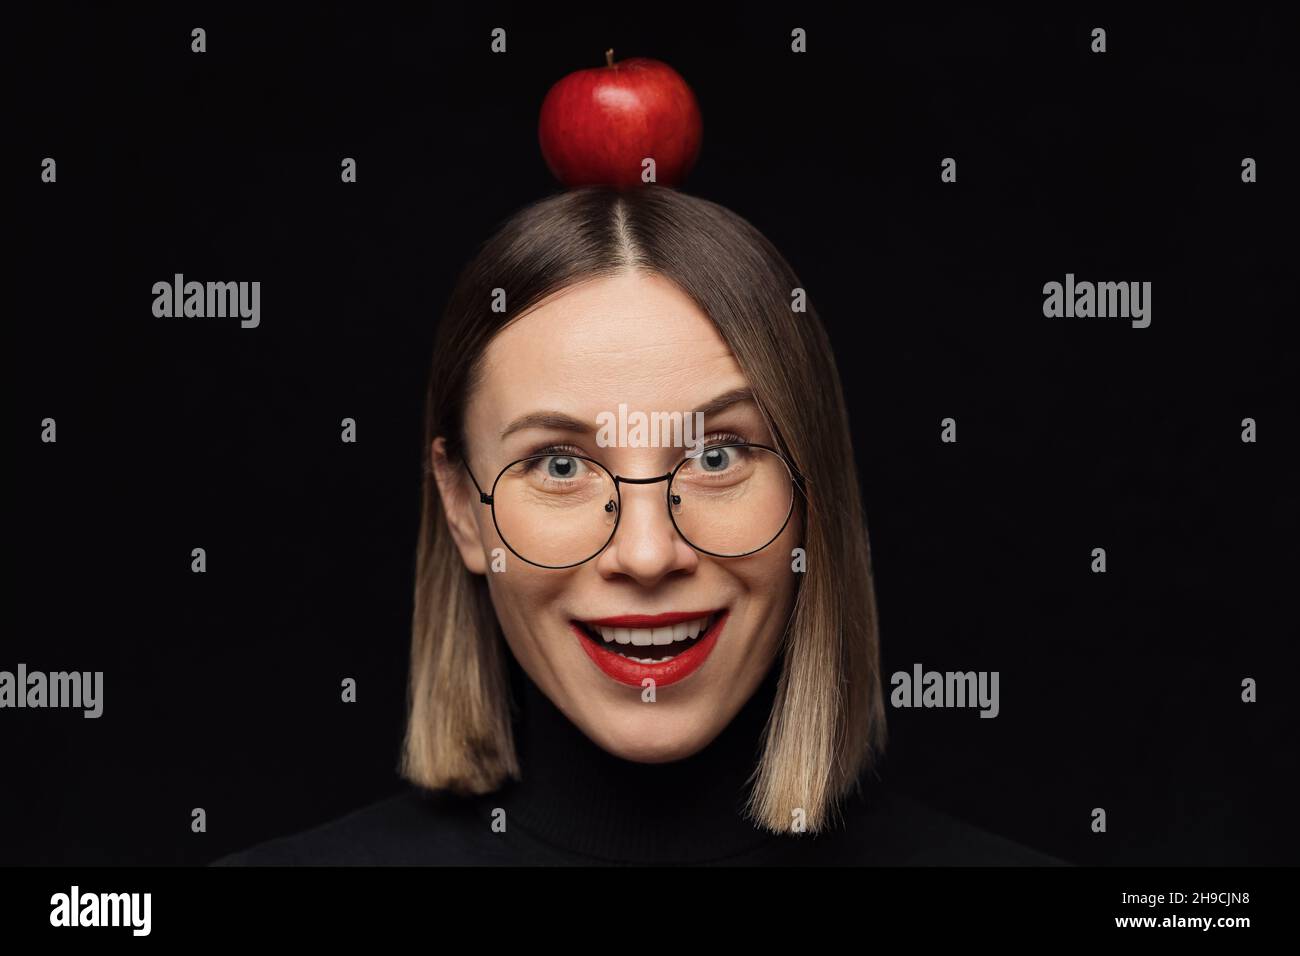 Gros plan surprise femme portrait portant des lunettes avec des cadres noirs, avec des lèvres rouges, regardant l'appareil photo avec une pomme rouge sur la tête sur fond noir. Banque D'Images